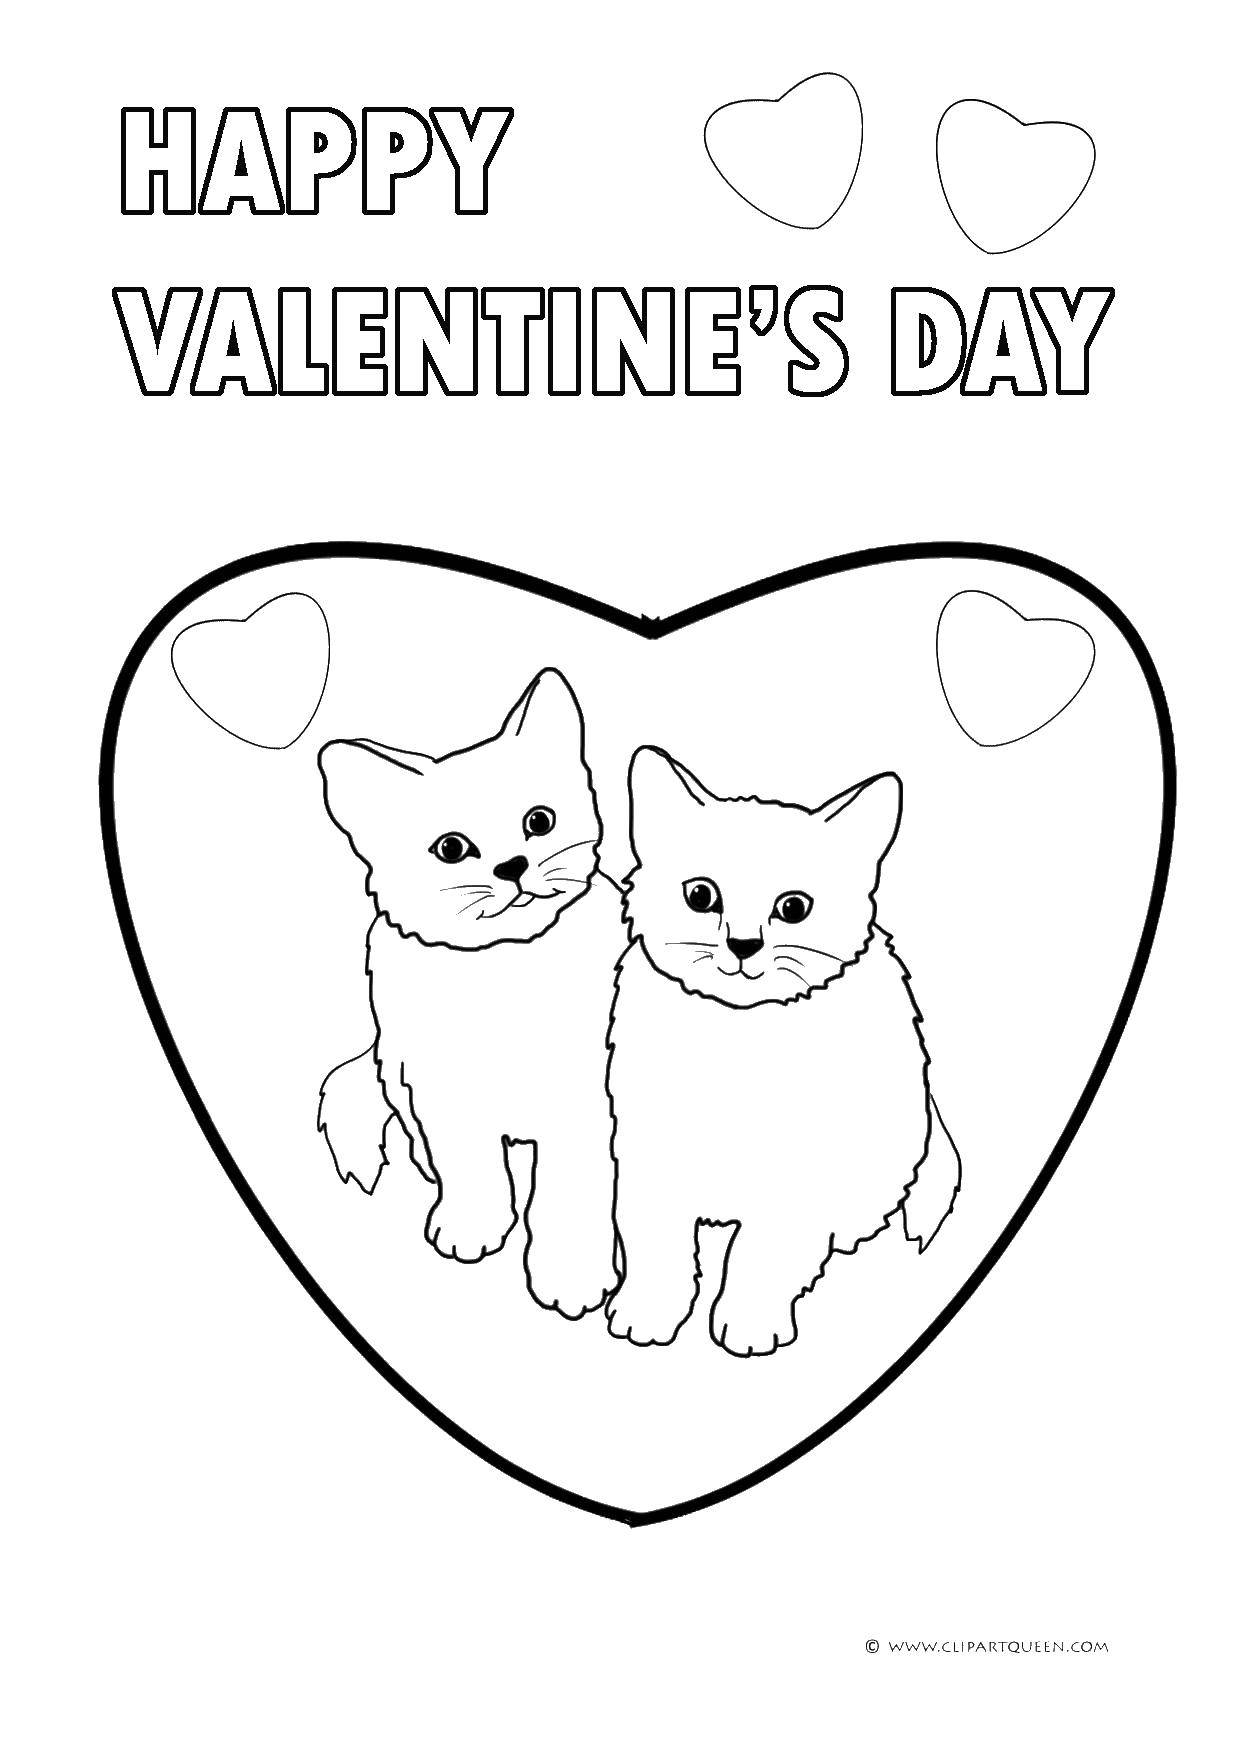 Название: Раскраска Счастливого дня валентина. Категория: День святого валентина. Теги: коты, сердце, день валентина.